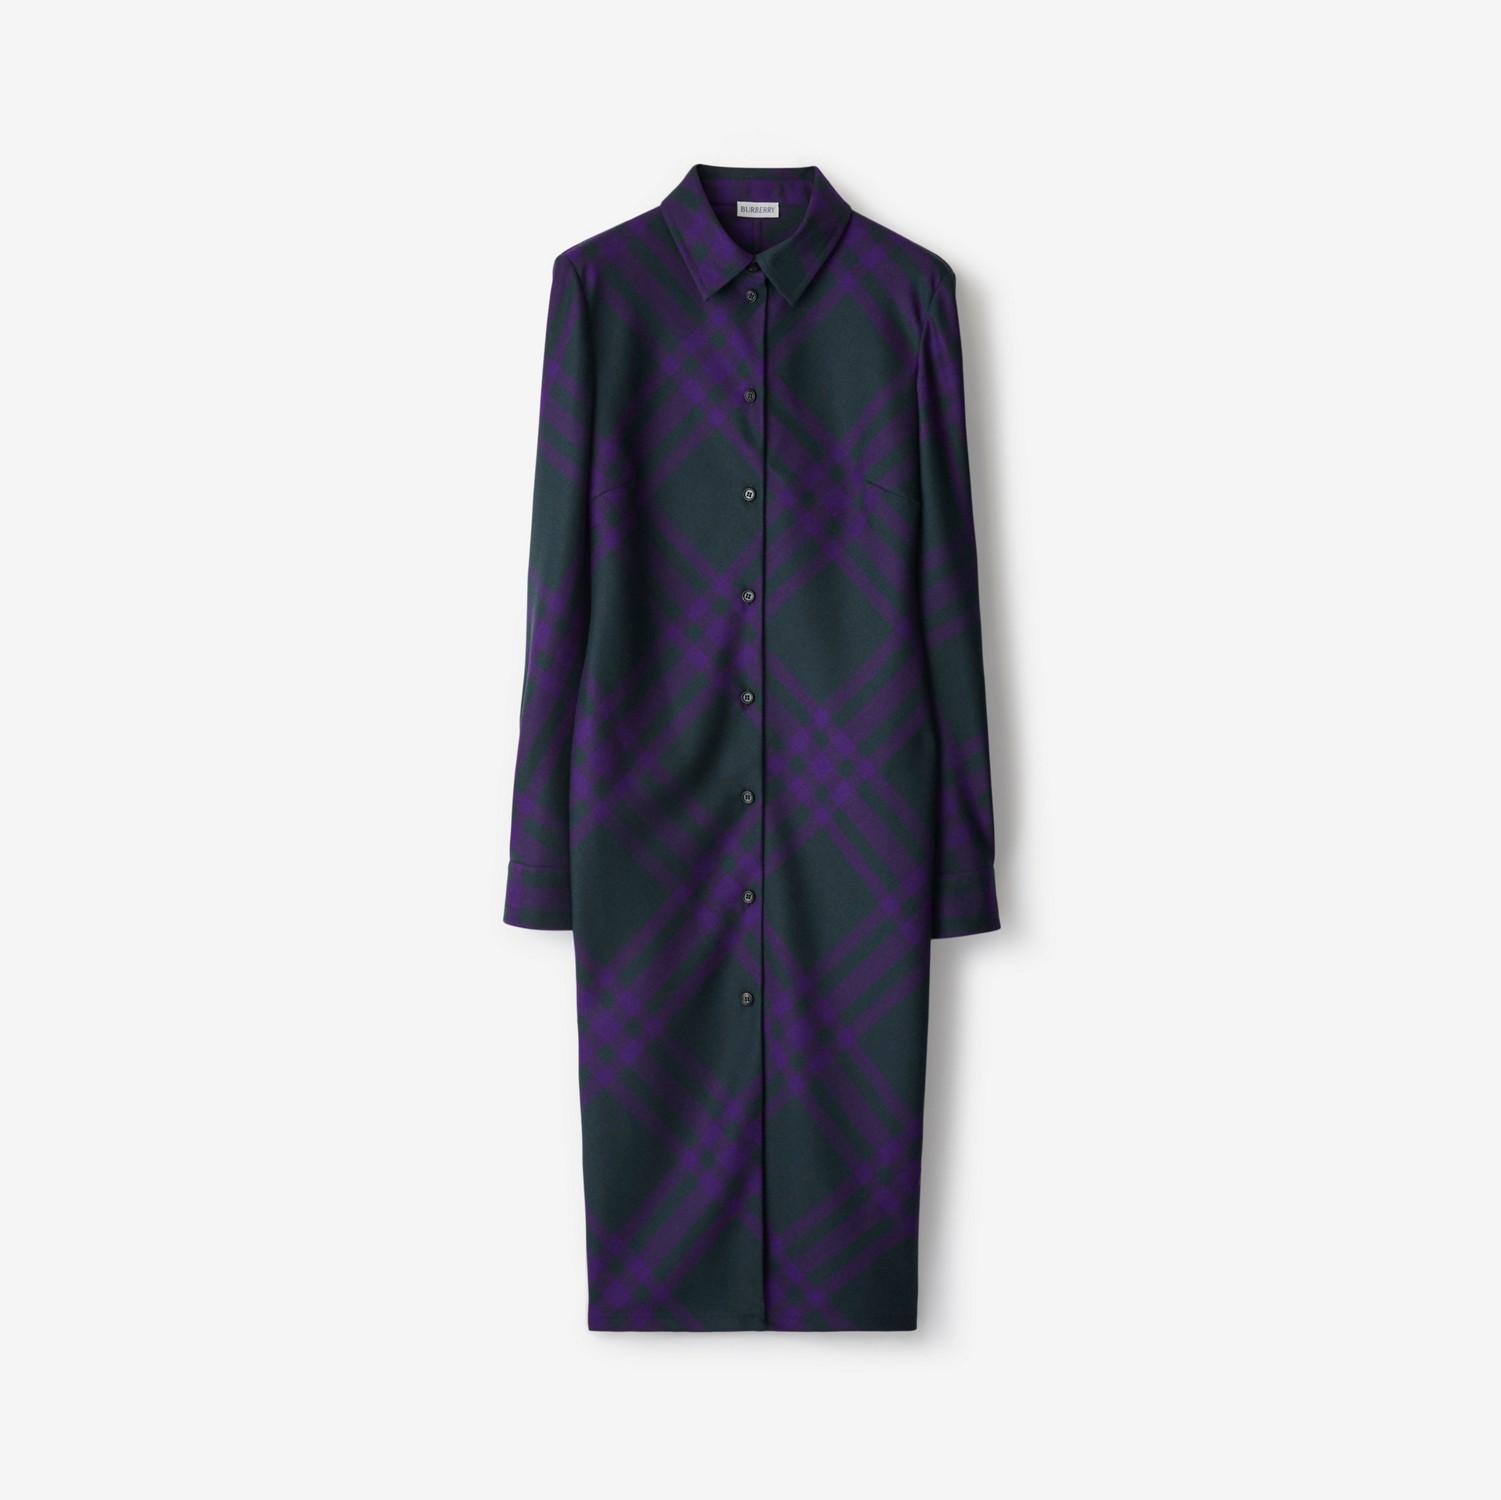 Vestido estilo camisa em lã com estampa xadrez (Deep Royal) - Mulheres | Burberry® oficial